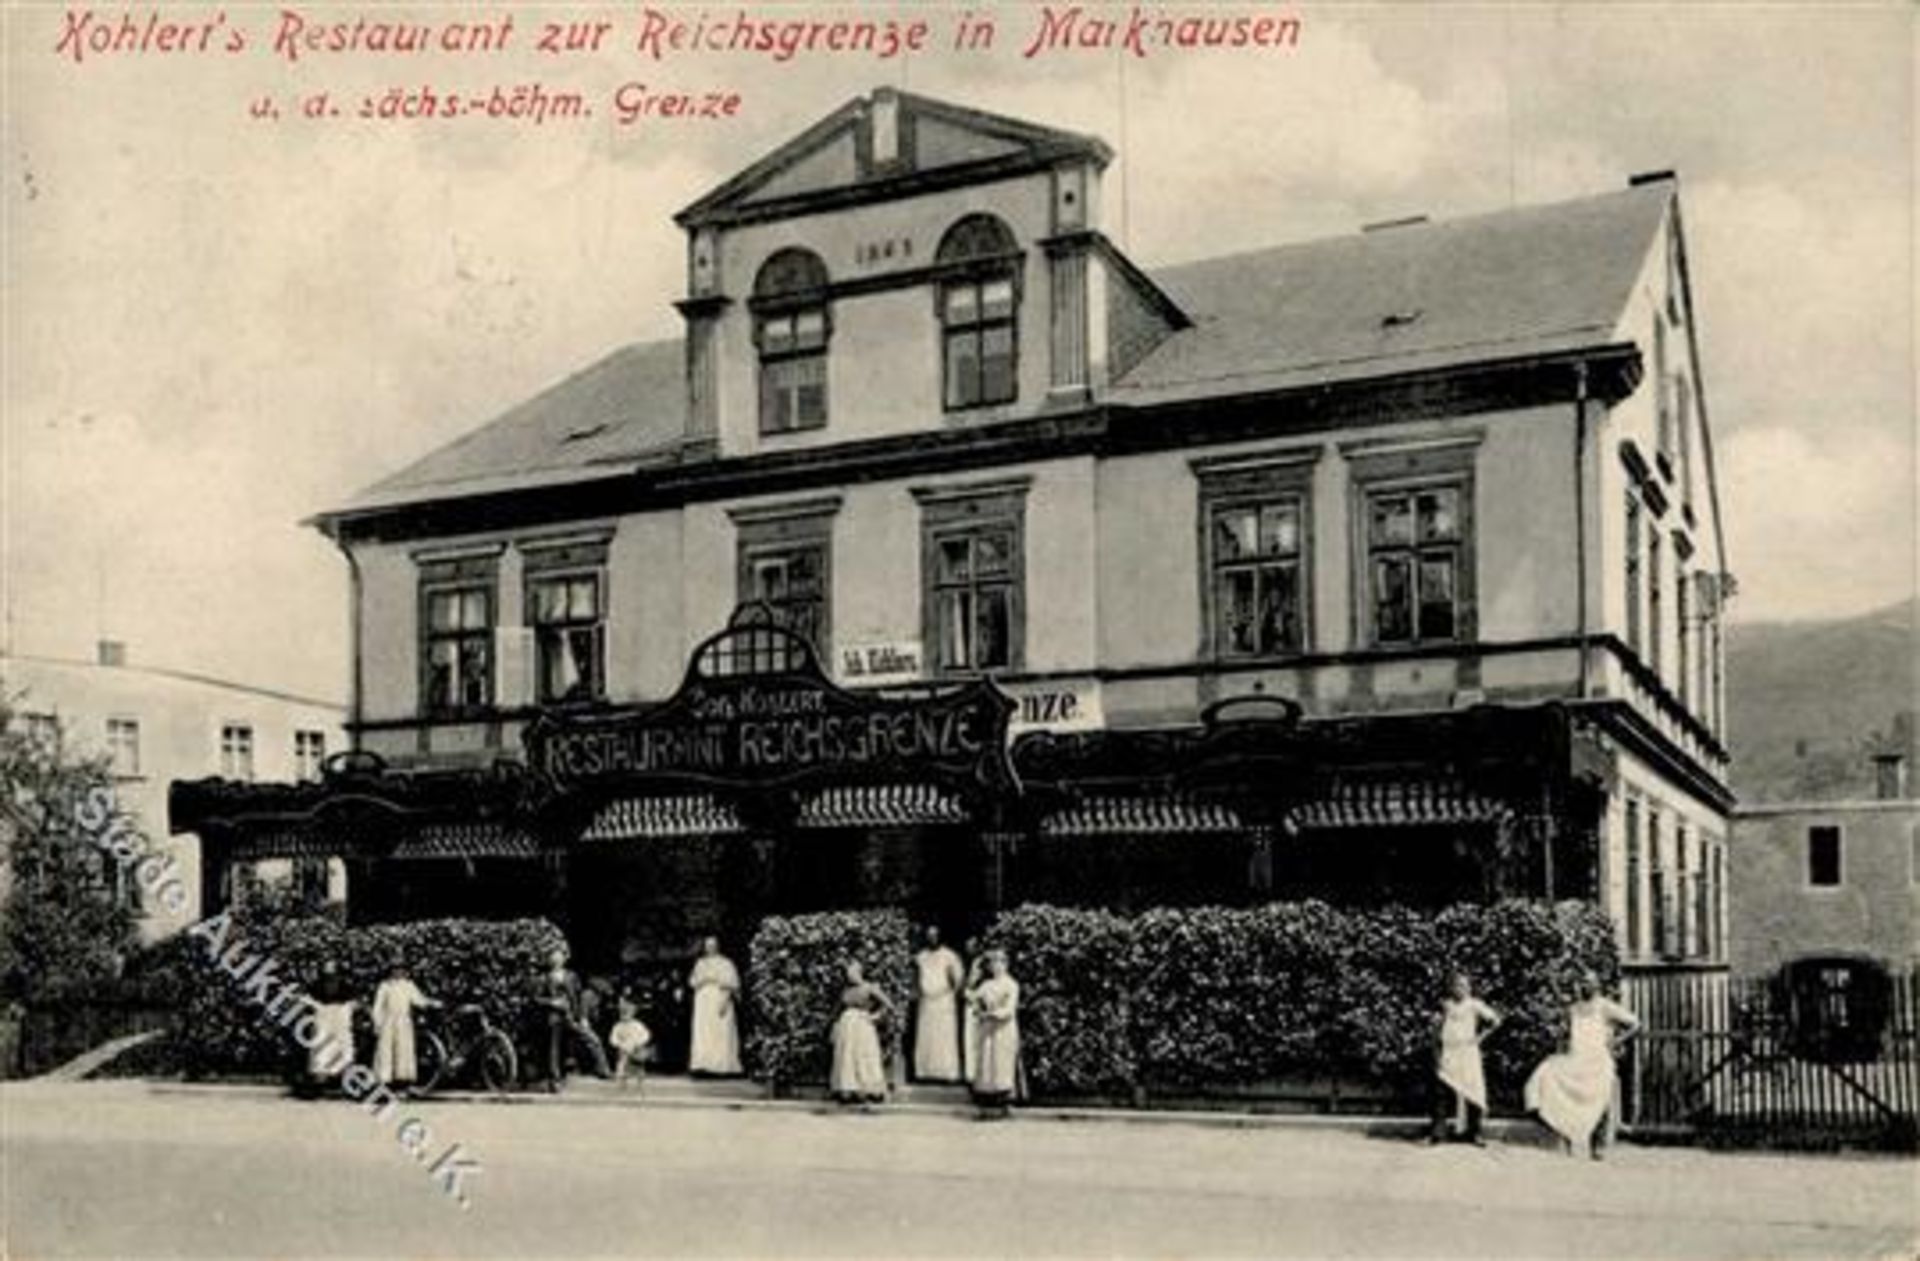 MARKHAUSEN b.Graslitz,Böhmen - Restaurant -Zur Reichsgrenze- IDieses Los wird in einer online-